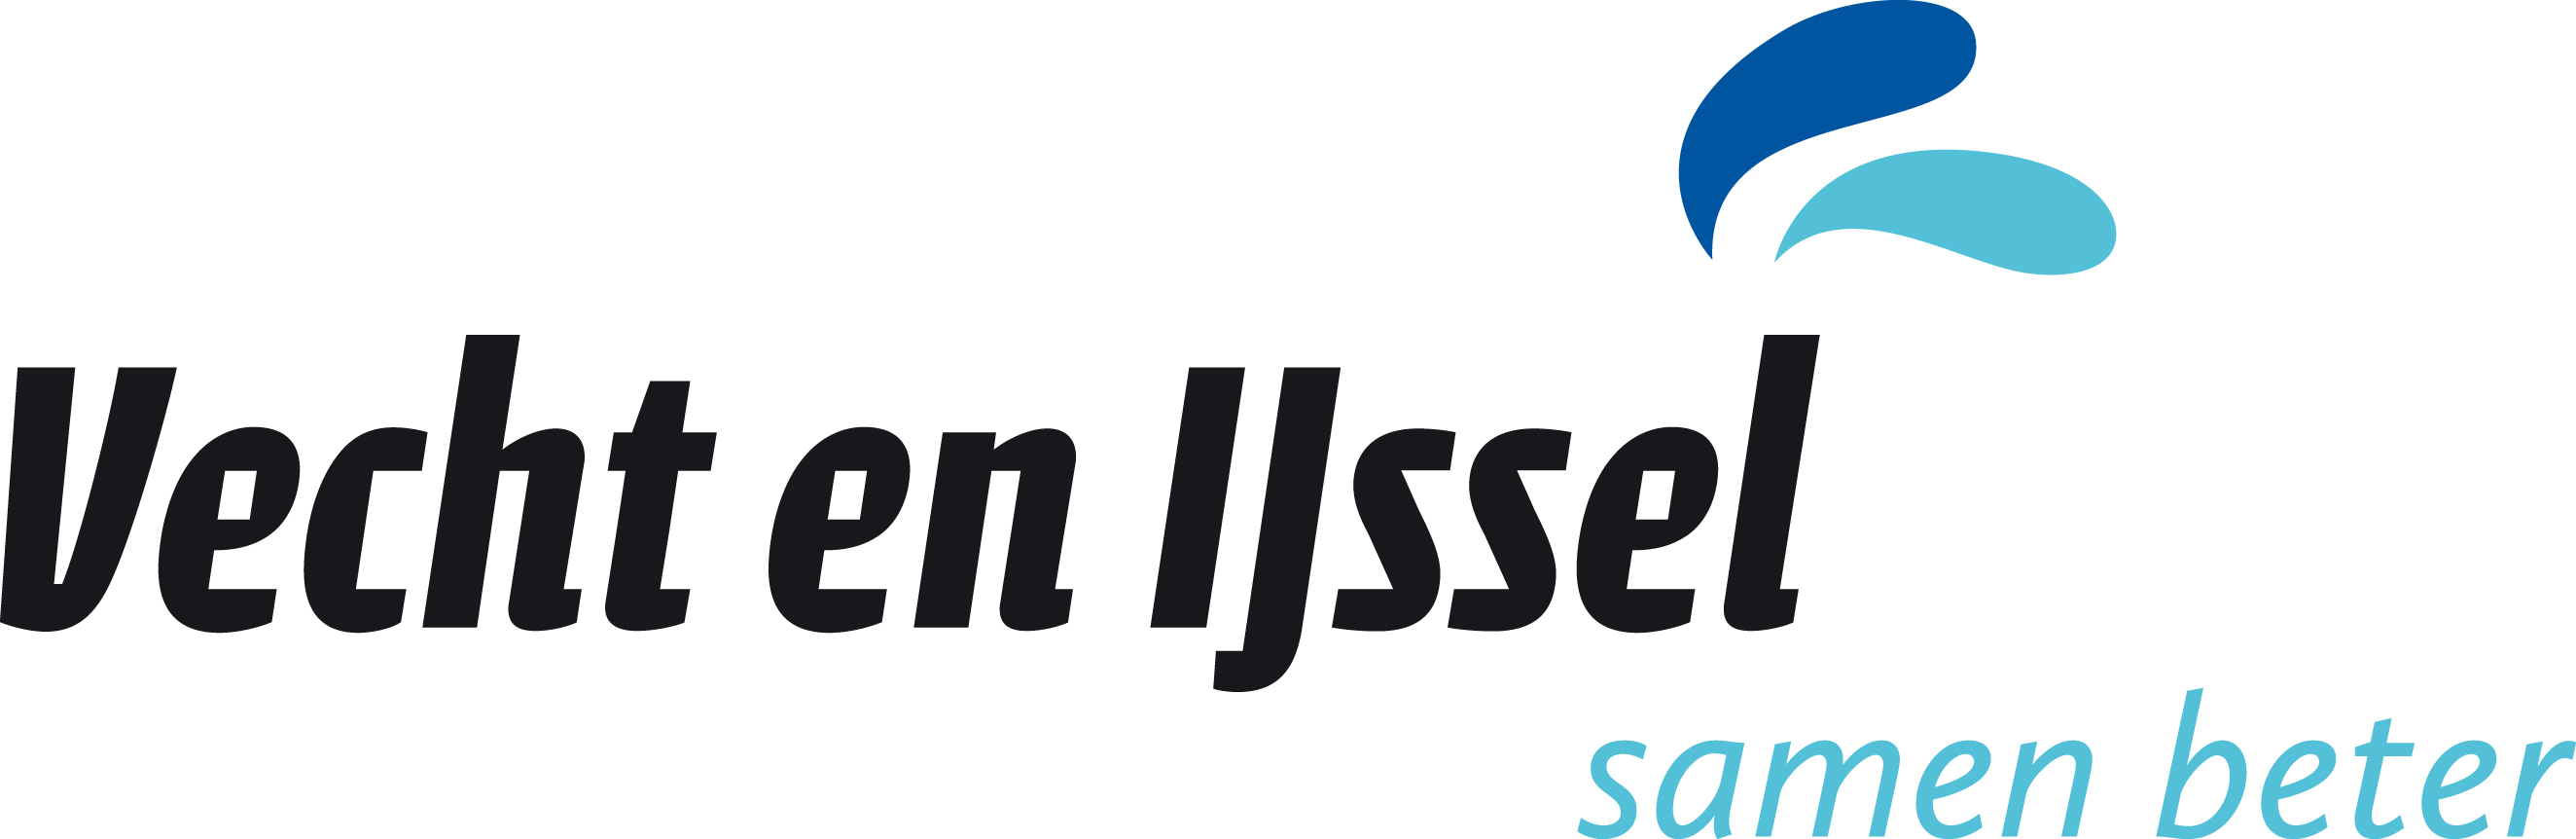 https://kvvu.nl/wp-content/uploads/2013/05/Logo_VechtenIJssel-groot.jpg